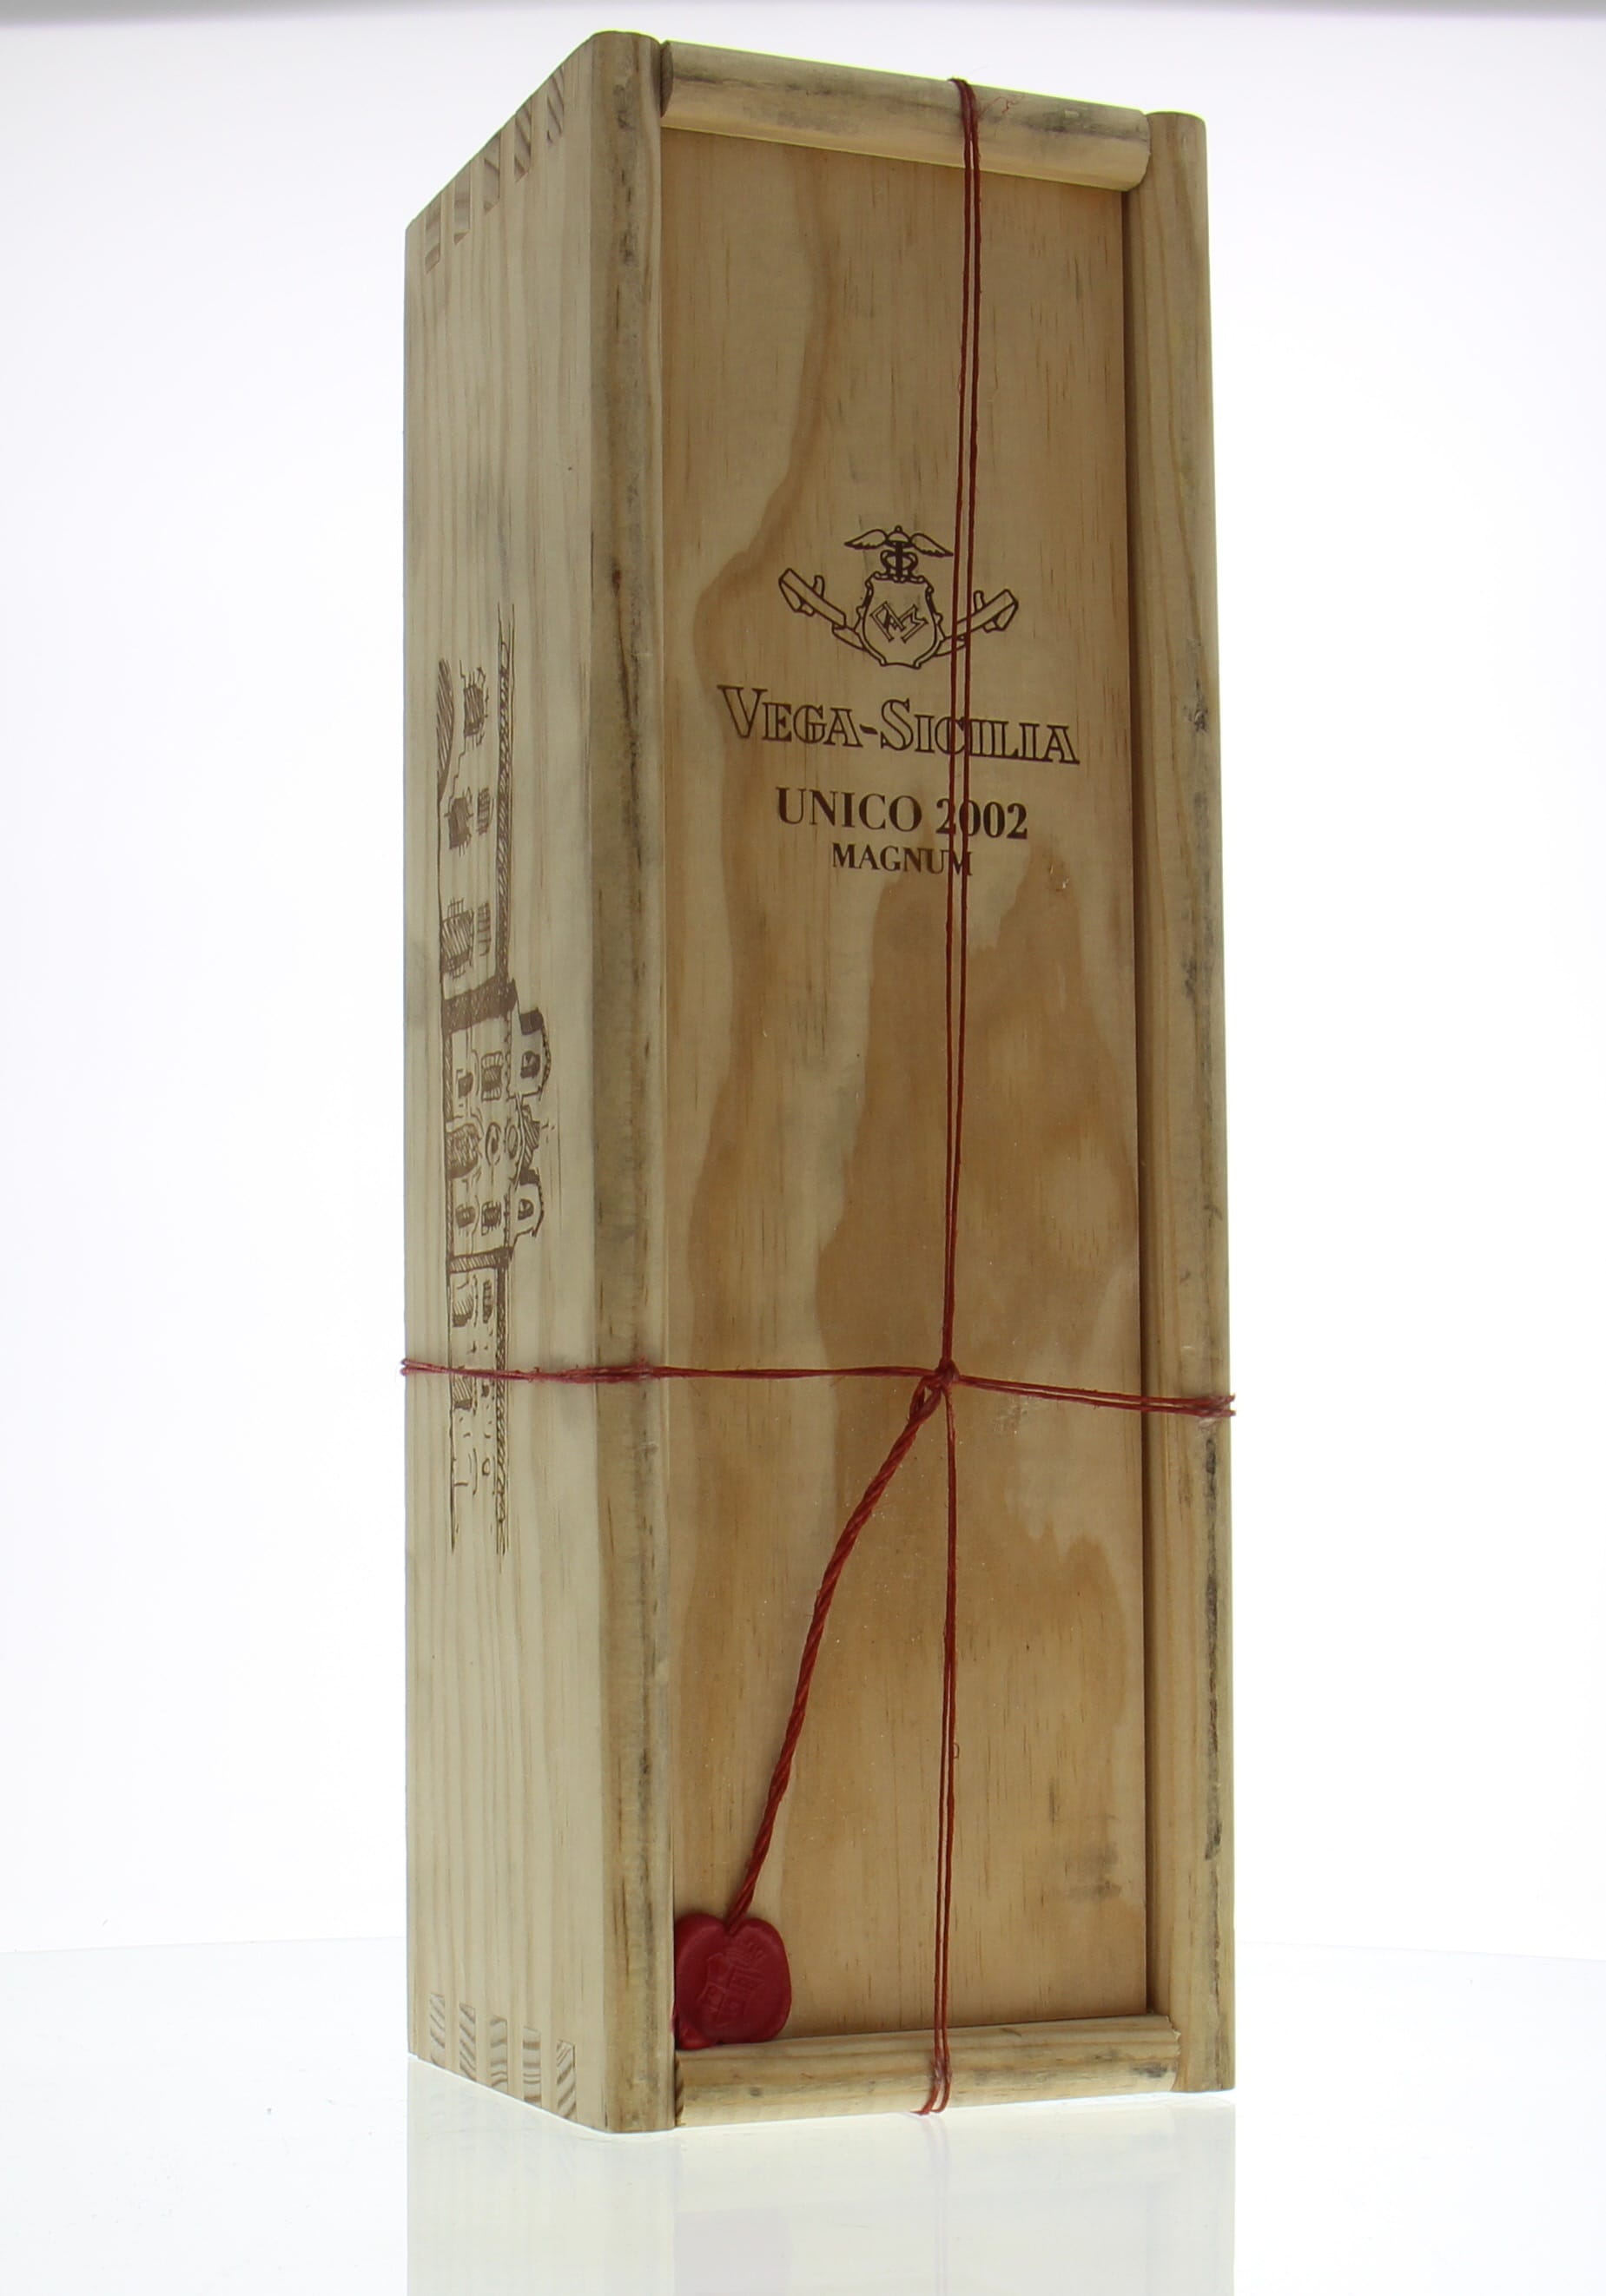 Vega Sicilia - Unico 2002 From Original Wooden Case